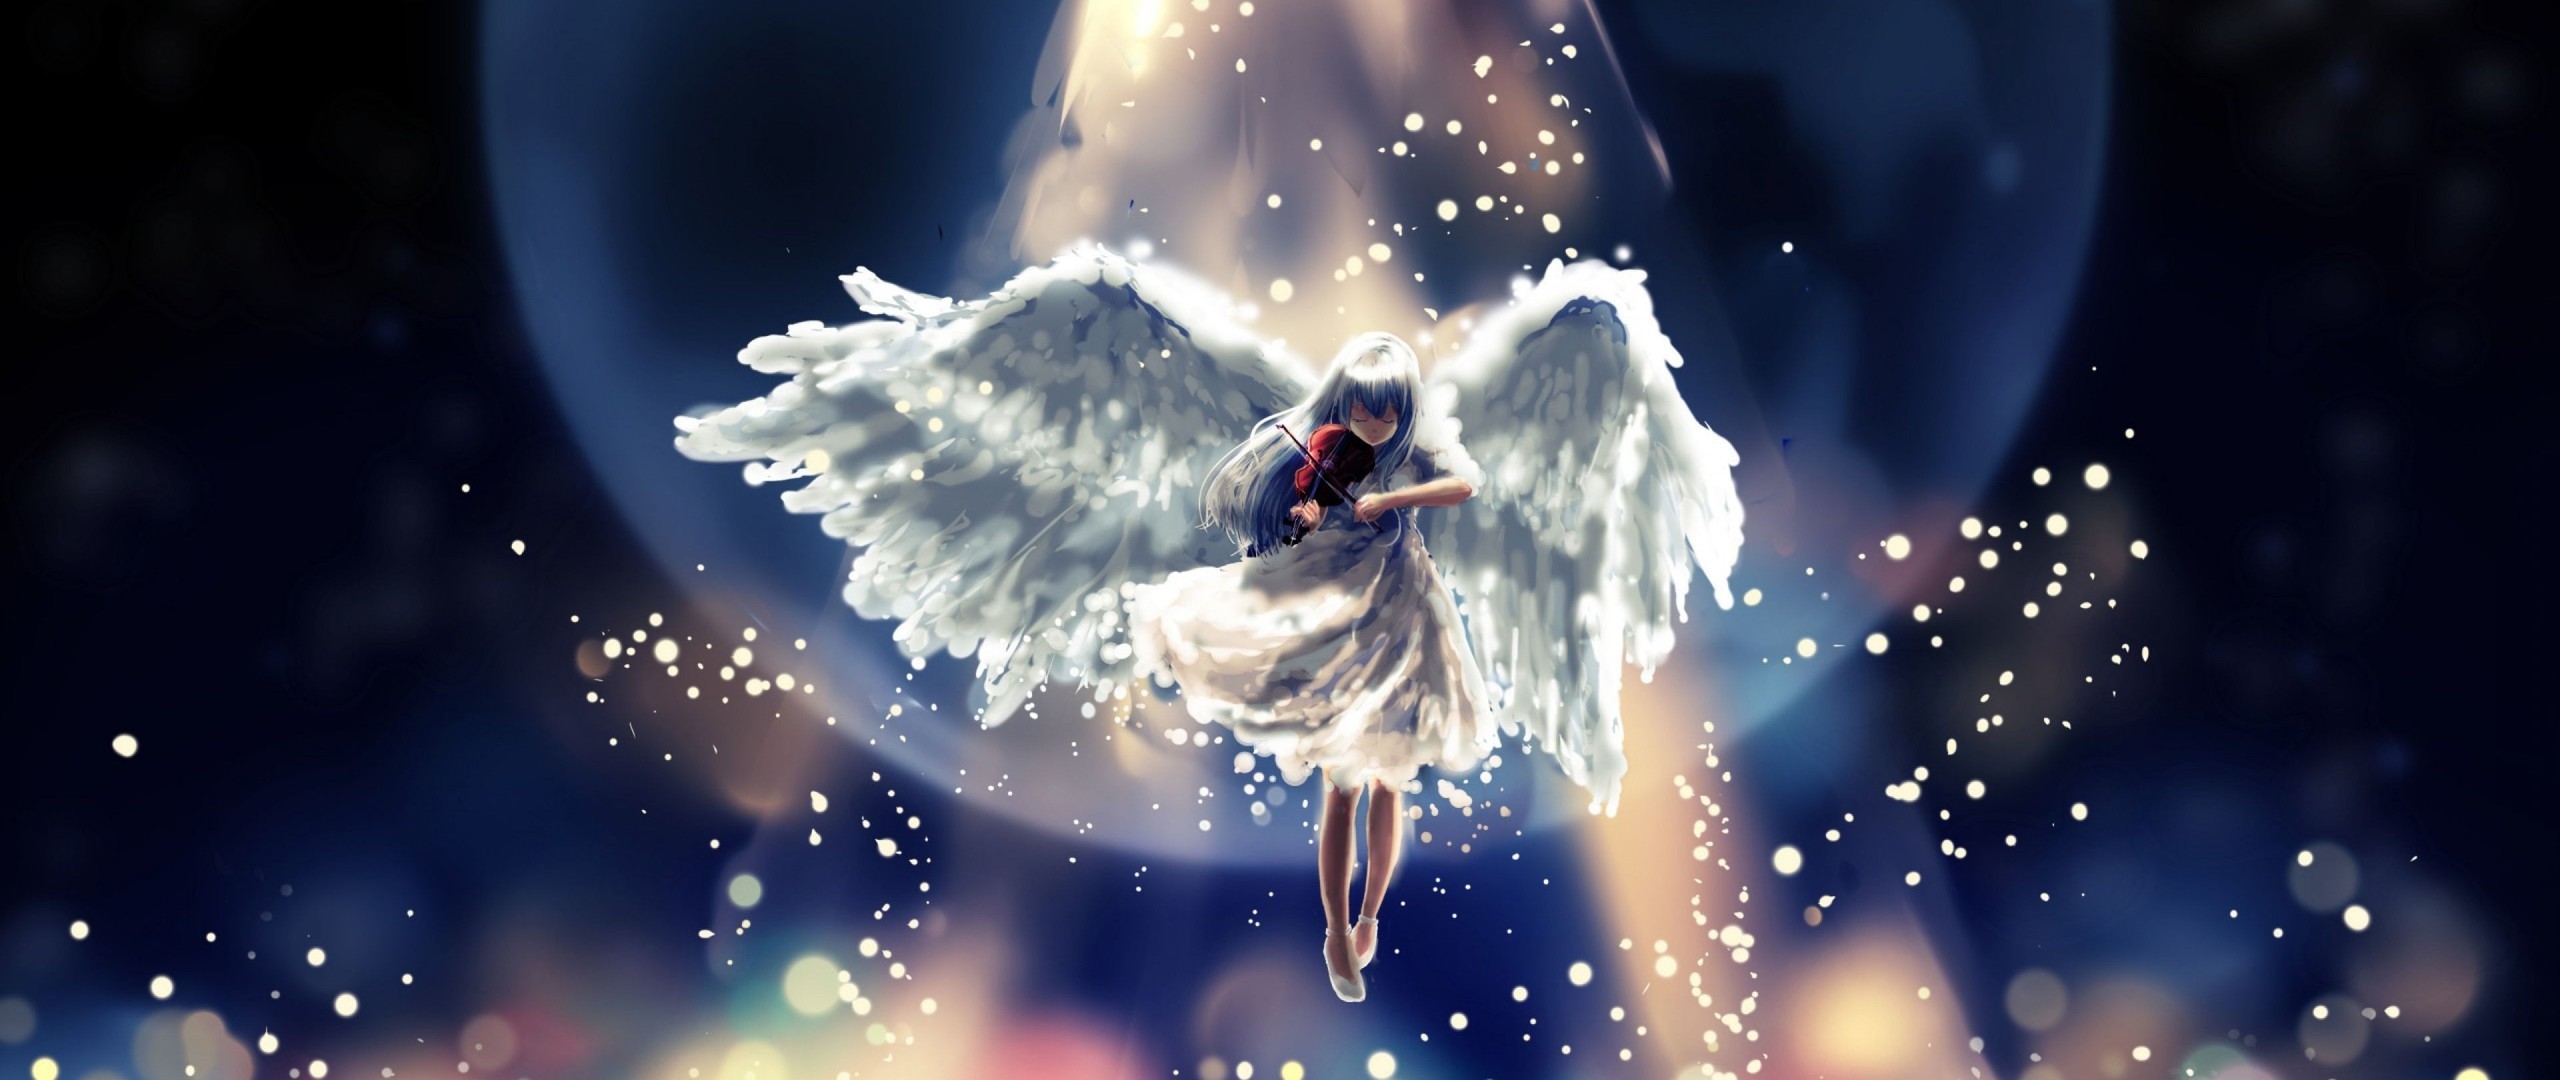 2560x1080 angel-wings.jpg